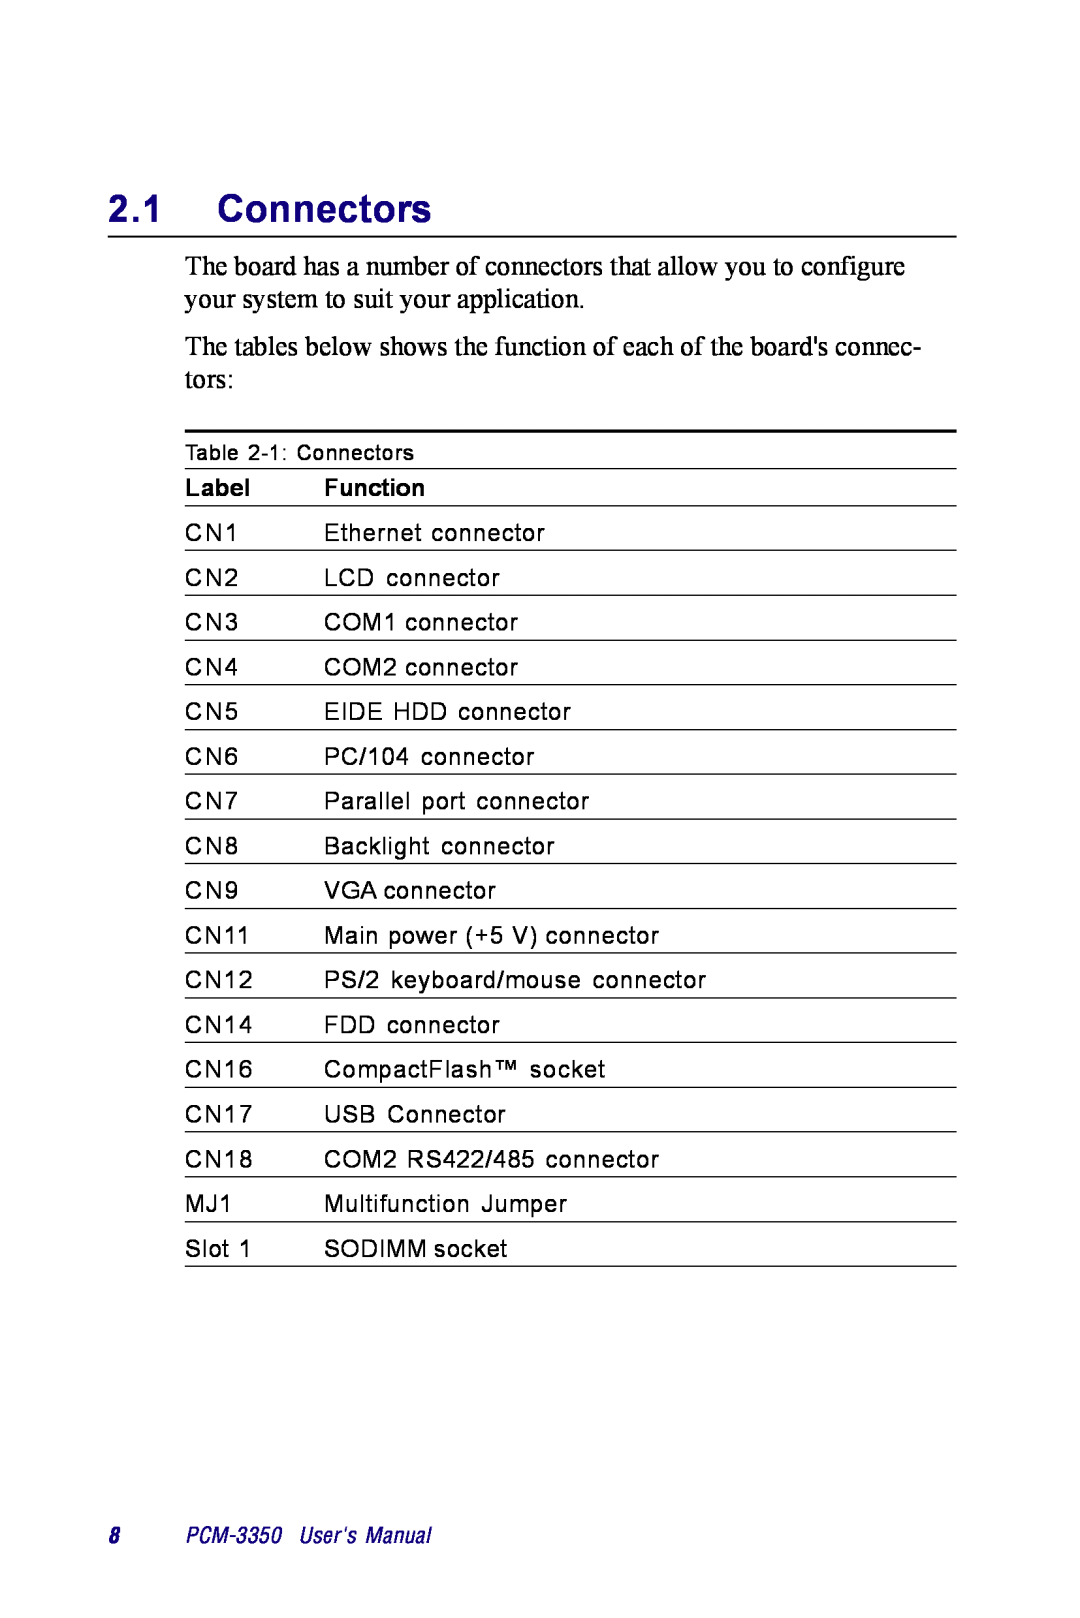 Advantech PCM-3350 Series user manual Connectors, Label, Function 